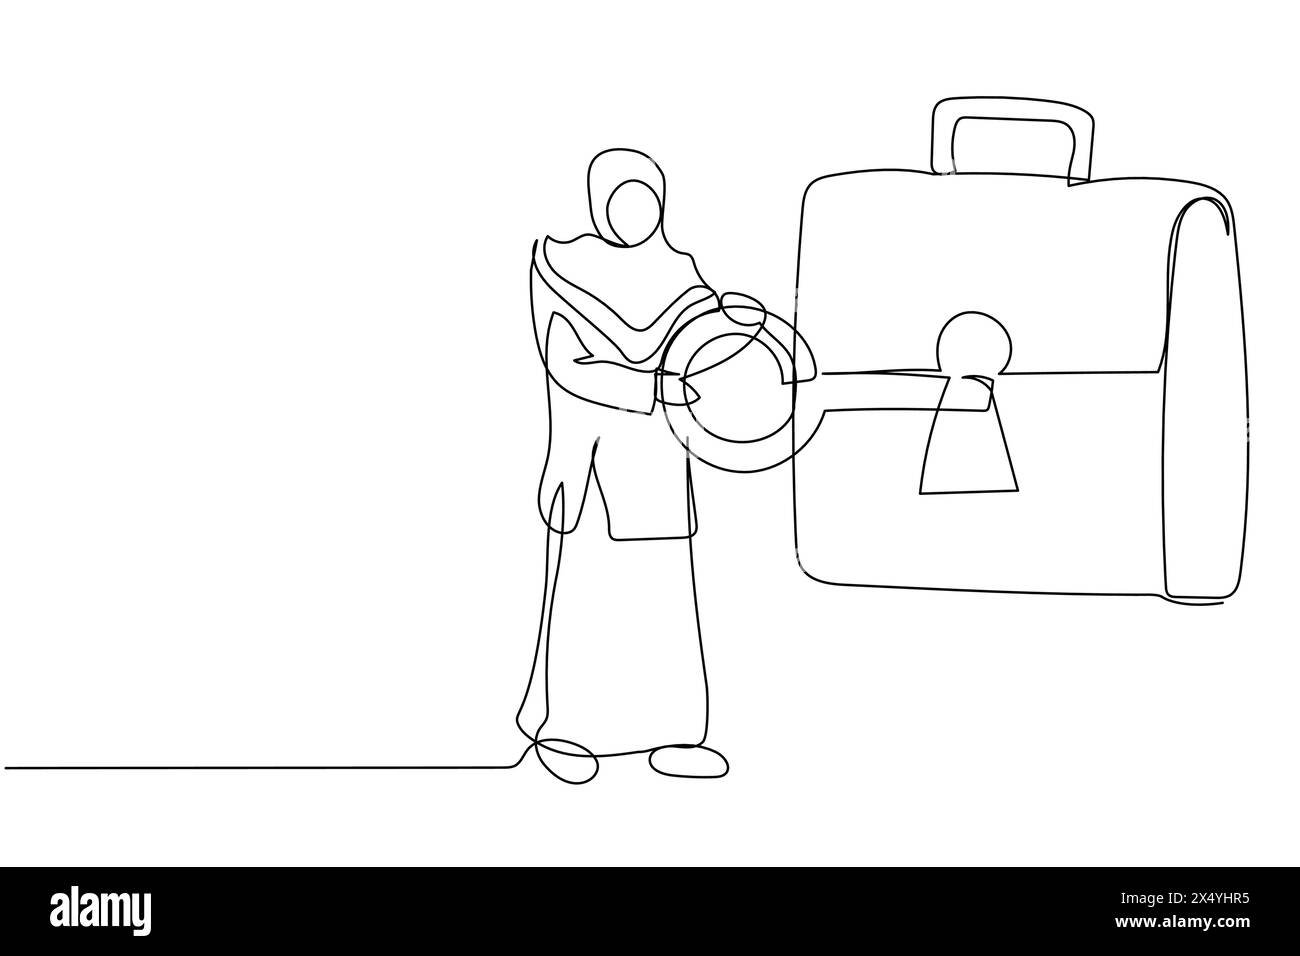 Una linea continua che disegna una donna d'affari araba che mette la chiave nella valigetta. Borsa di sicurezza per documento segreto. Investire portafoglio, titoli, stock mark Illustrazione Vettoriale